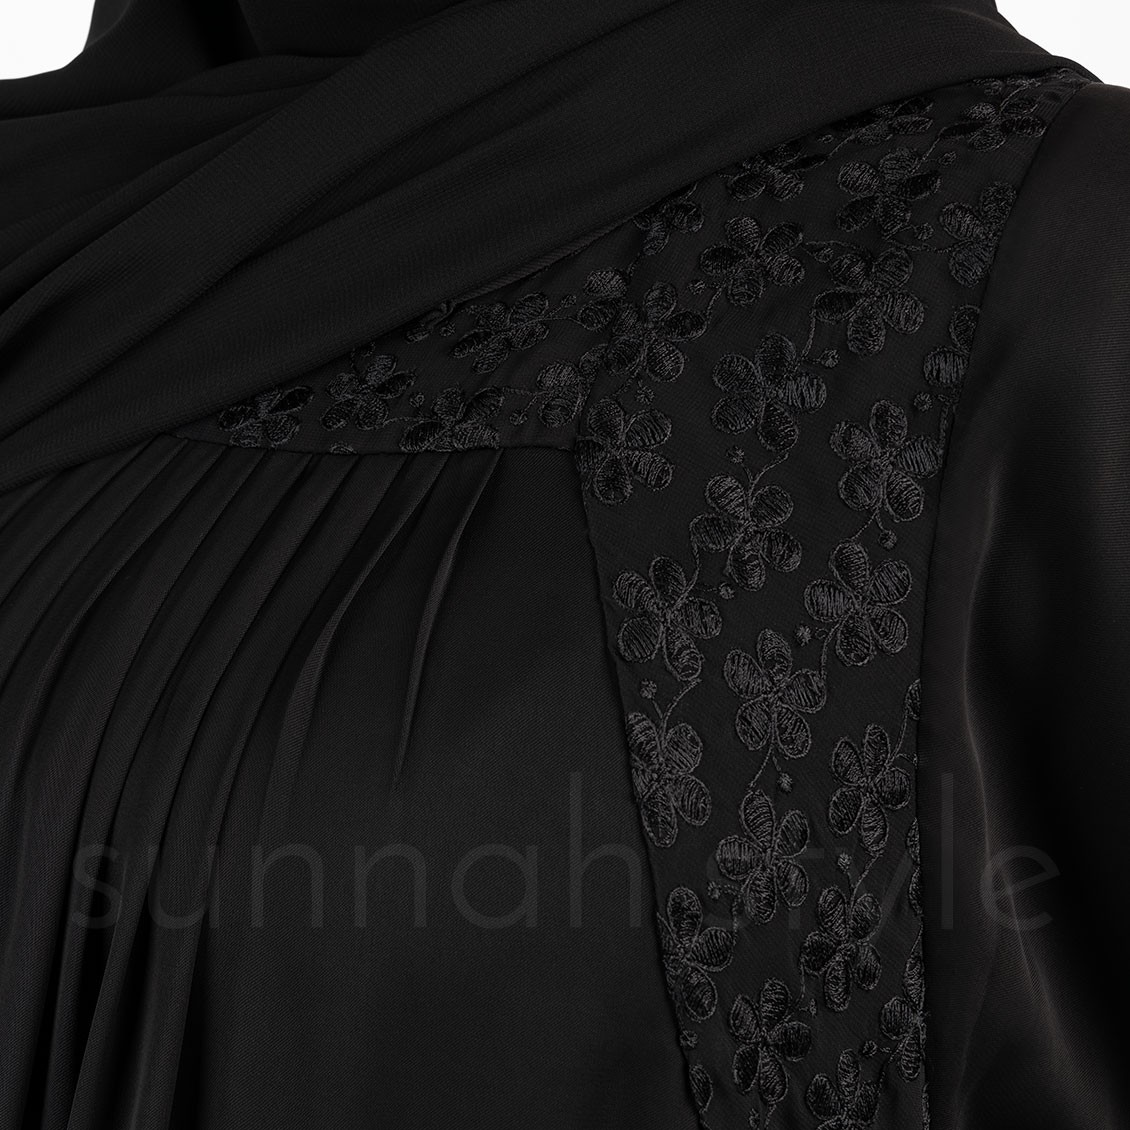 Sunnah Style Daisy Umbrella Abaya Black